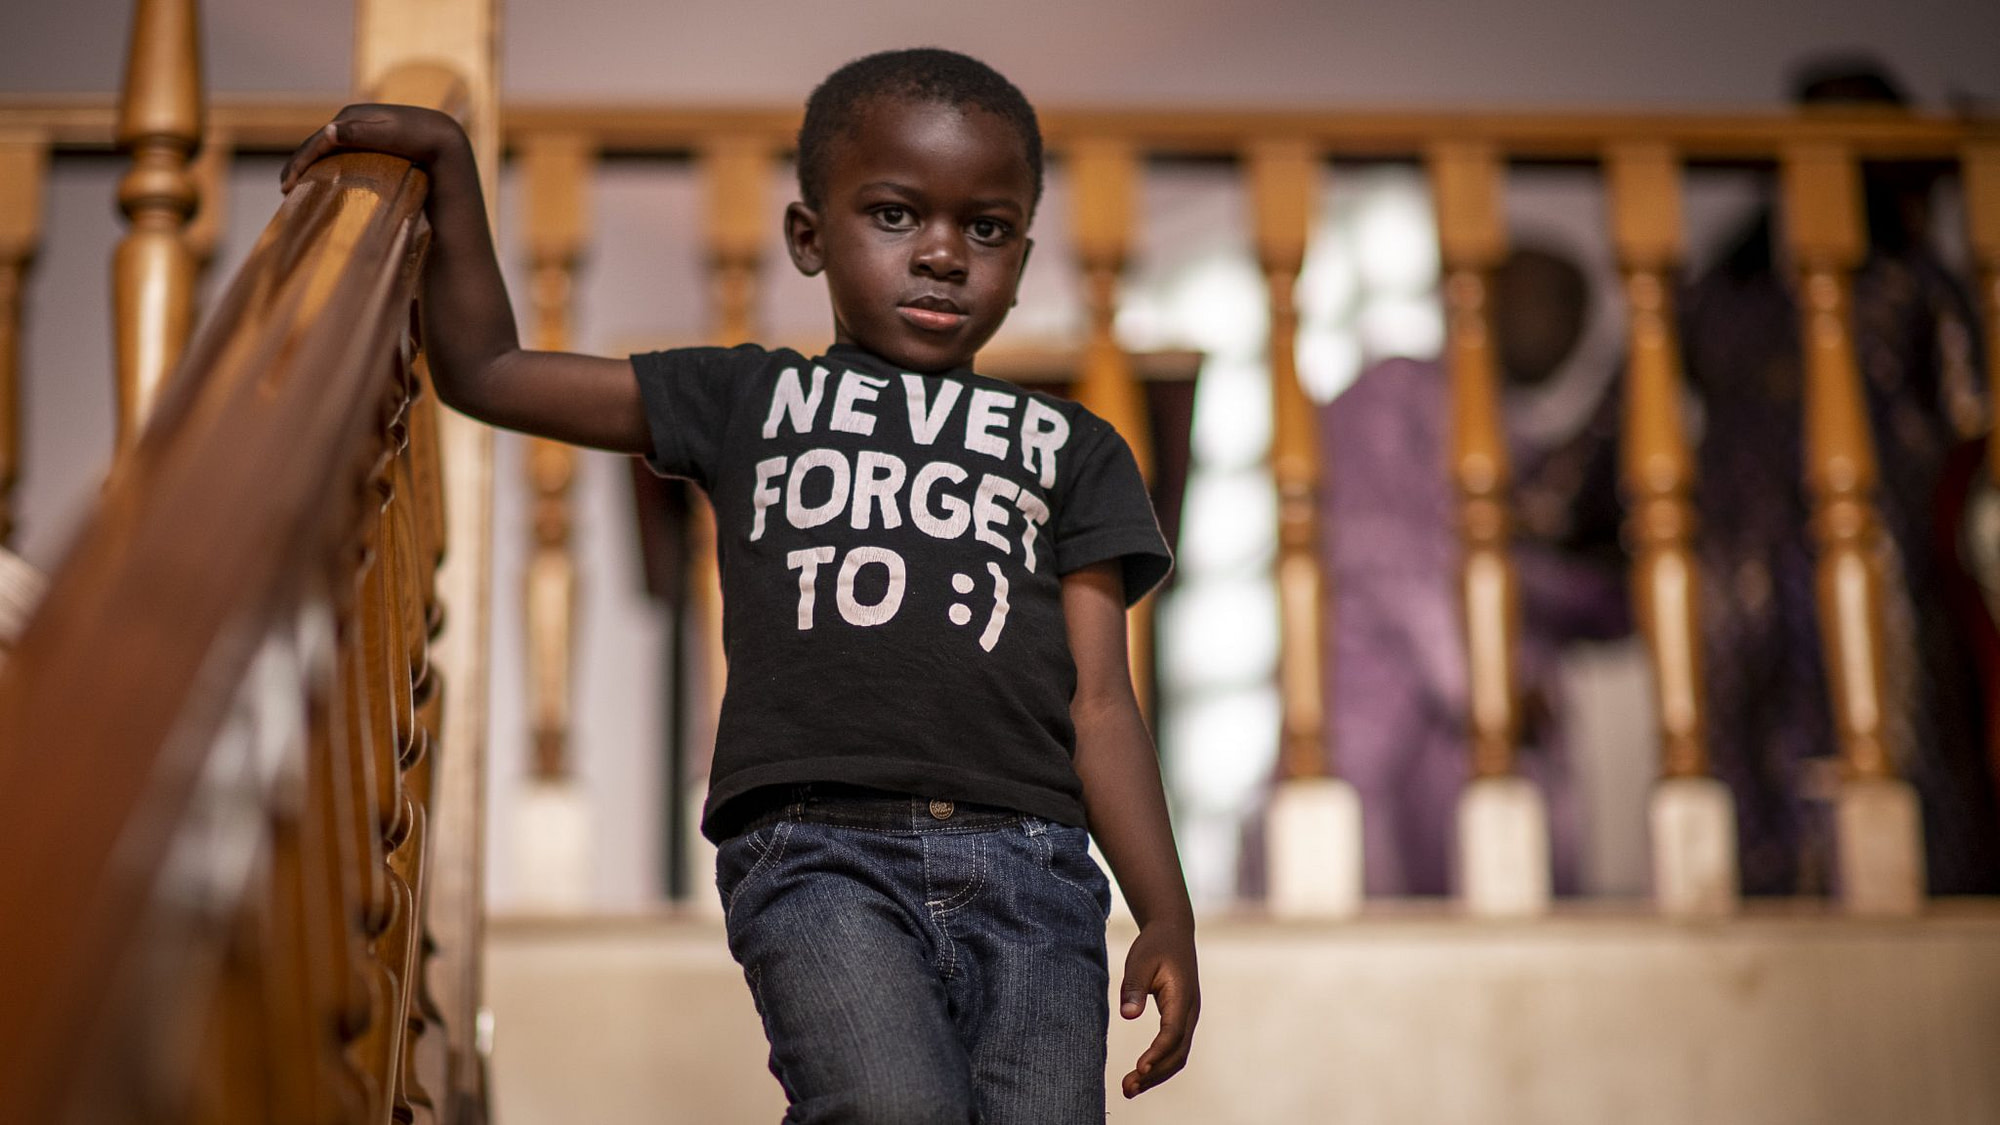 un bambino africano guarda serio il fotografo mentre scende dalle scale